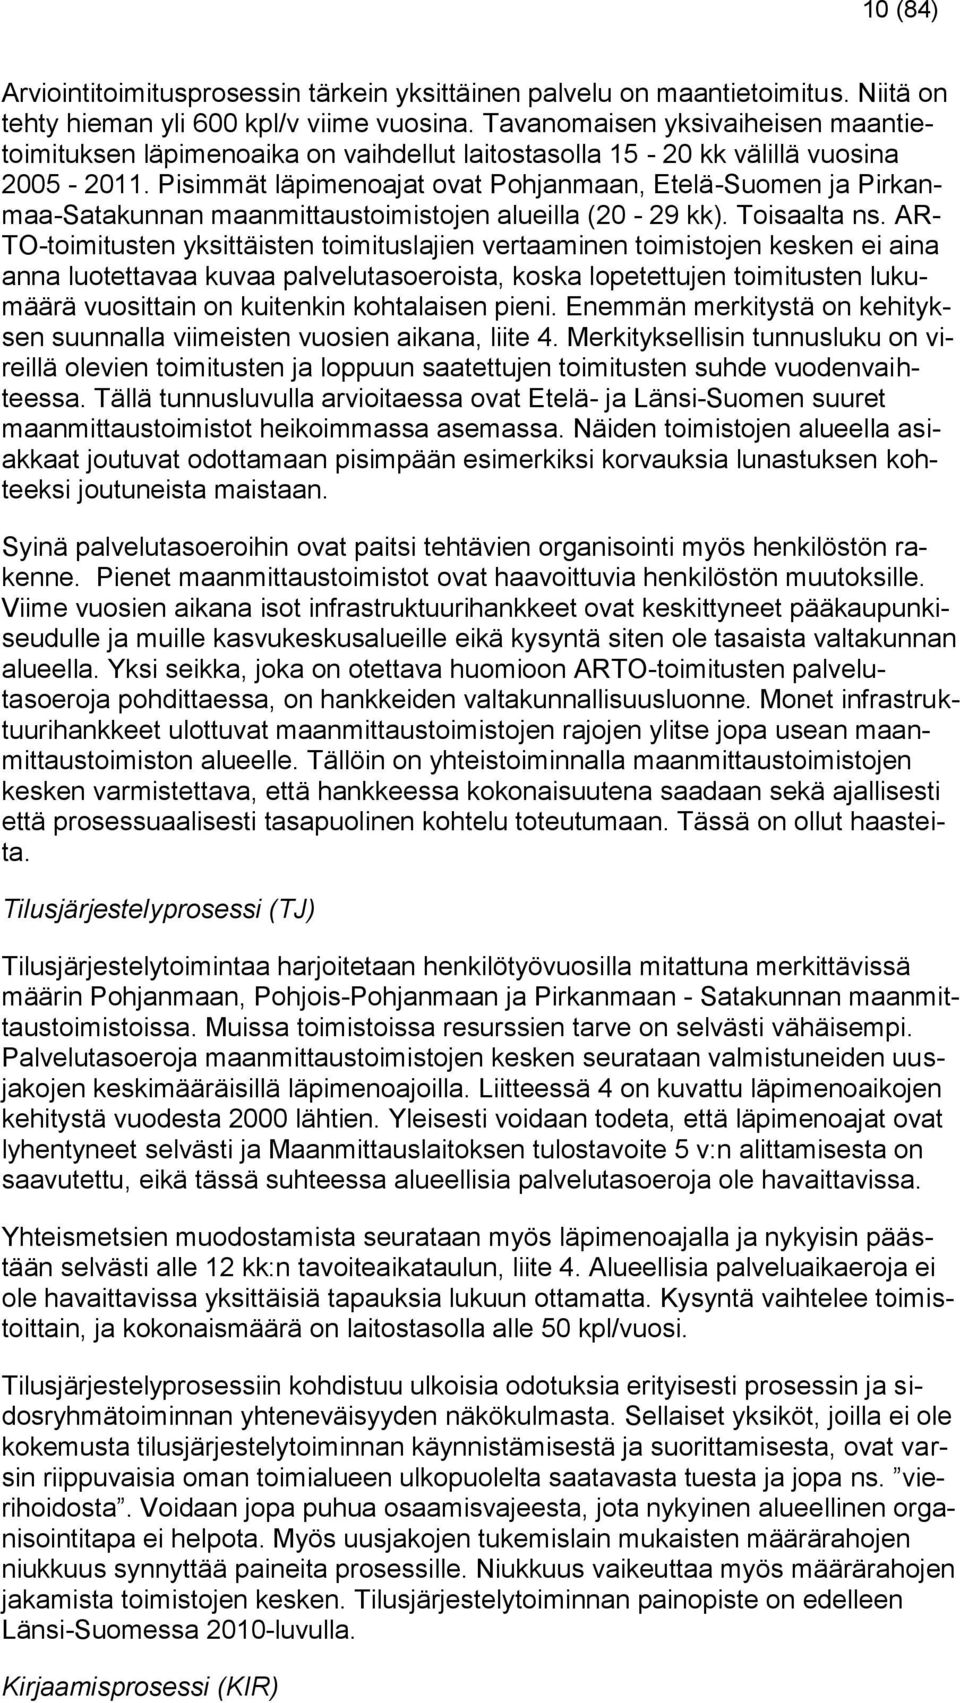 Pisimmät läpimenoajat ovat Pohjanmaan, Etelä-Suomen ja Pirkanmaa-Satakunnan maanmittaustoimistojen alueilla (20-29 kk). Toisaalta ns.